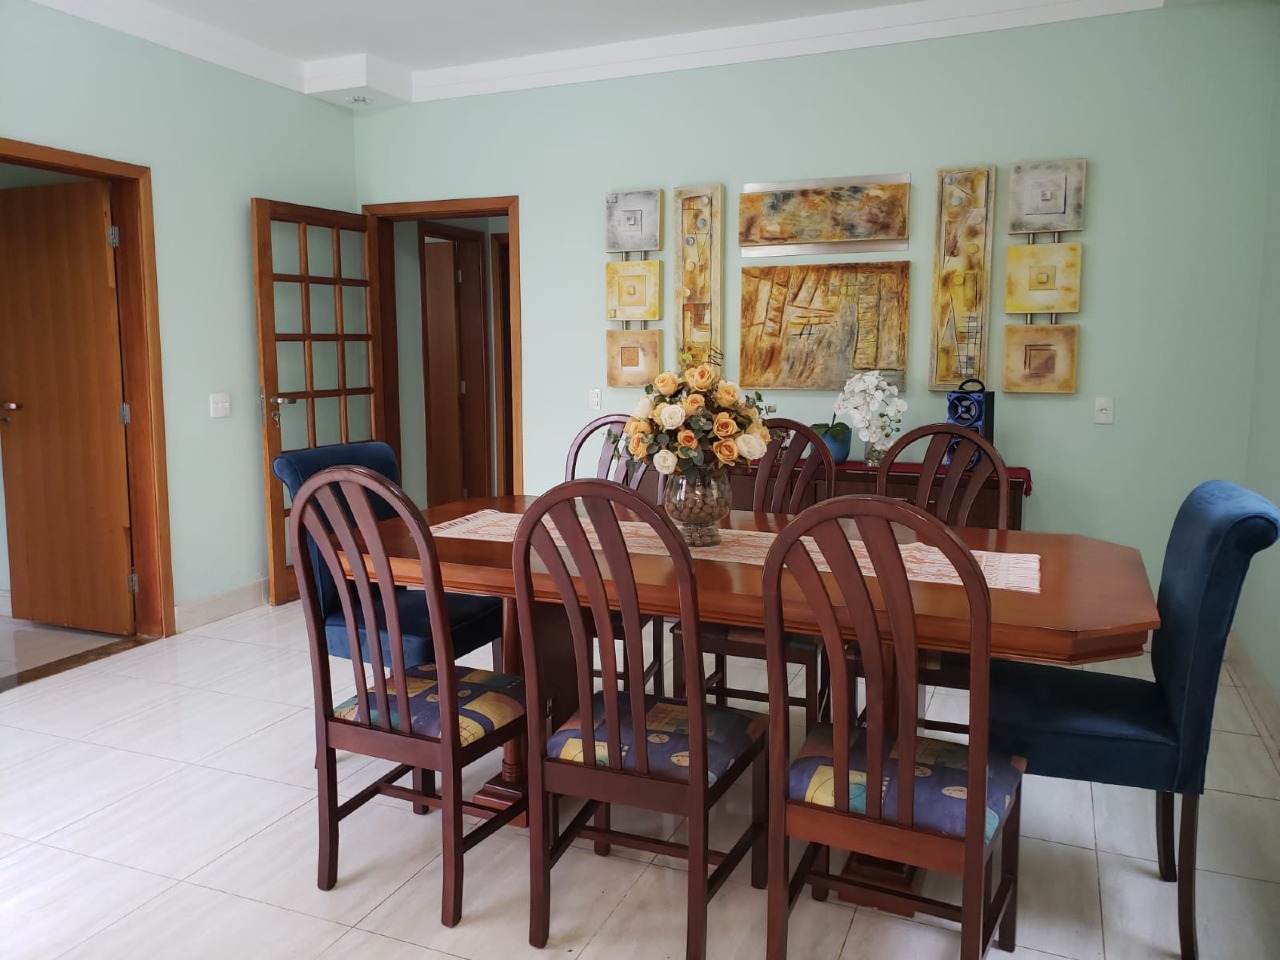 Casa em Condomínio à venda, 4 quartos, 1 suíte, 3 vagas, no bairro Nova Pompéia em Piracicaba - SP